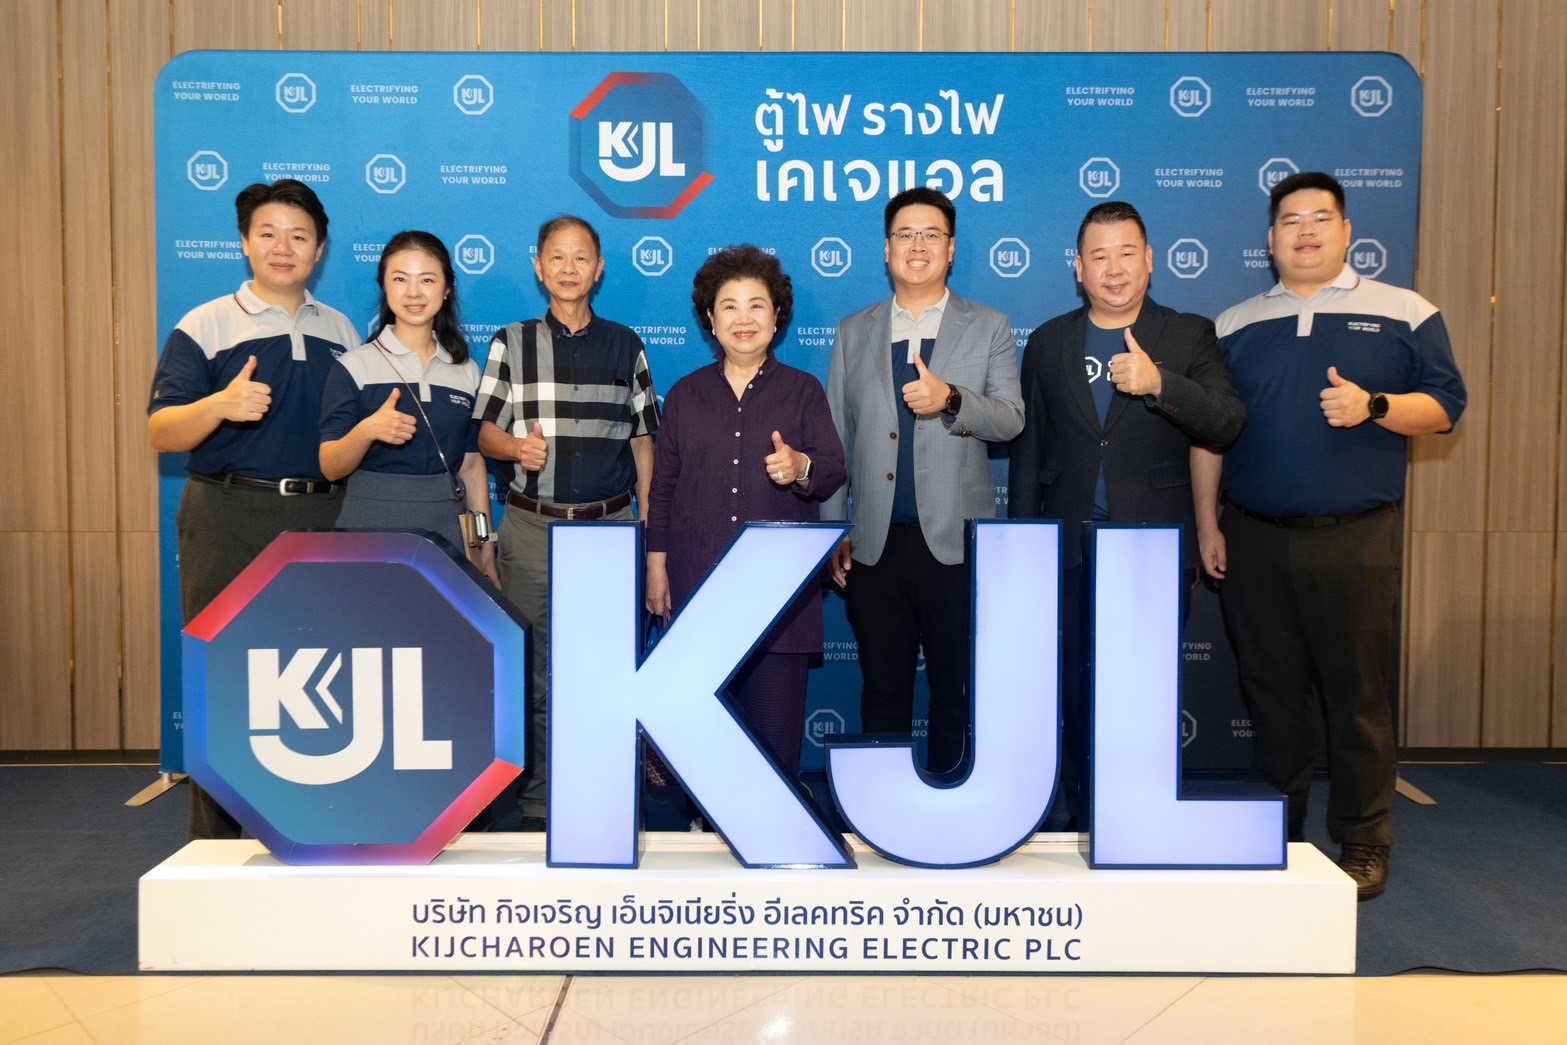 KJL แอ่วเหนือ “จัดสัมมนารวมพลคนไฟฟ้า” ON TOUR จ.เชียงราย เพิ่มองค์ความรู้แก่ช่างไฟฟ้า วิศวกร หรือ ผู้ออกแบบ ทั่วประเทศ